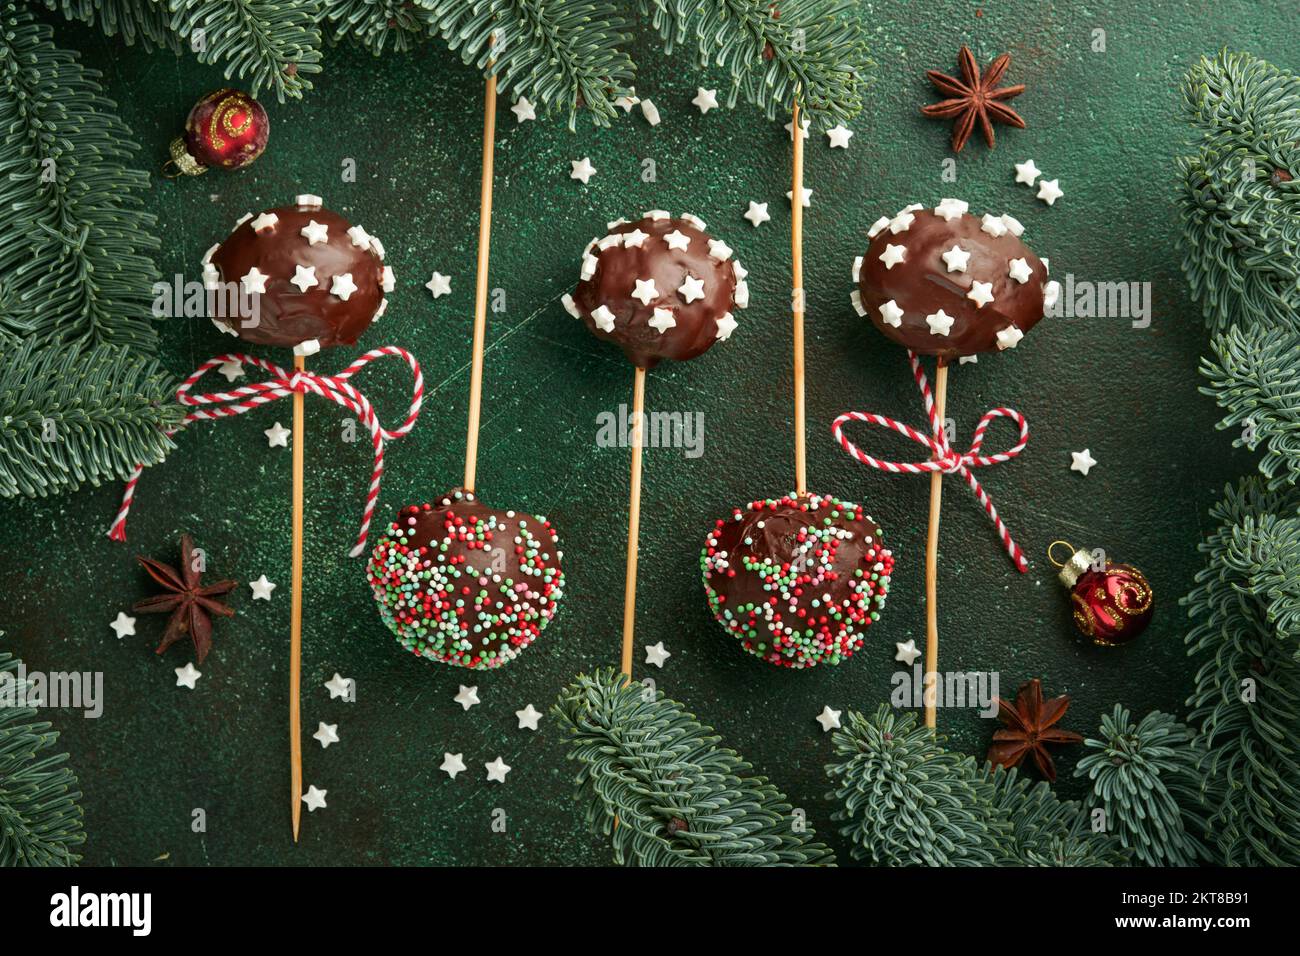 Heirate Weihnachten, süße Kuchenpopps. Weihnachtsdessert runde Brownie-Kuchen mit Sternen auf dunkelgrünem Hintergrund. Weihnachtsessen Dessertkonzept Stockfoto